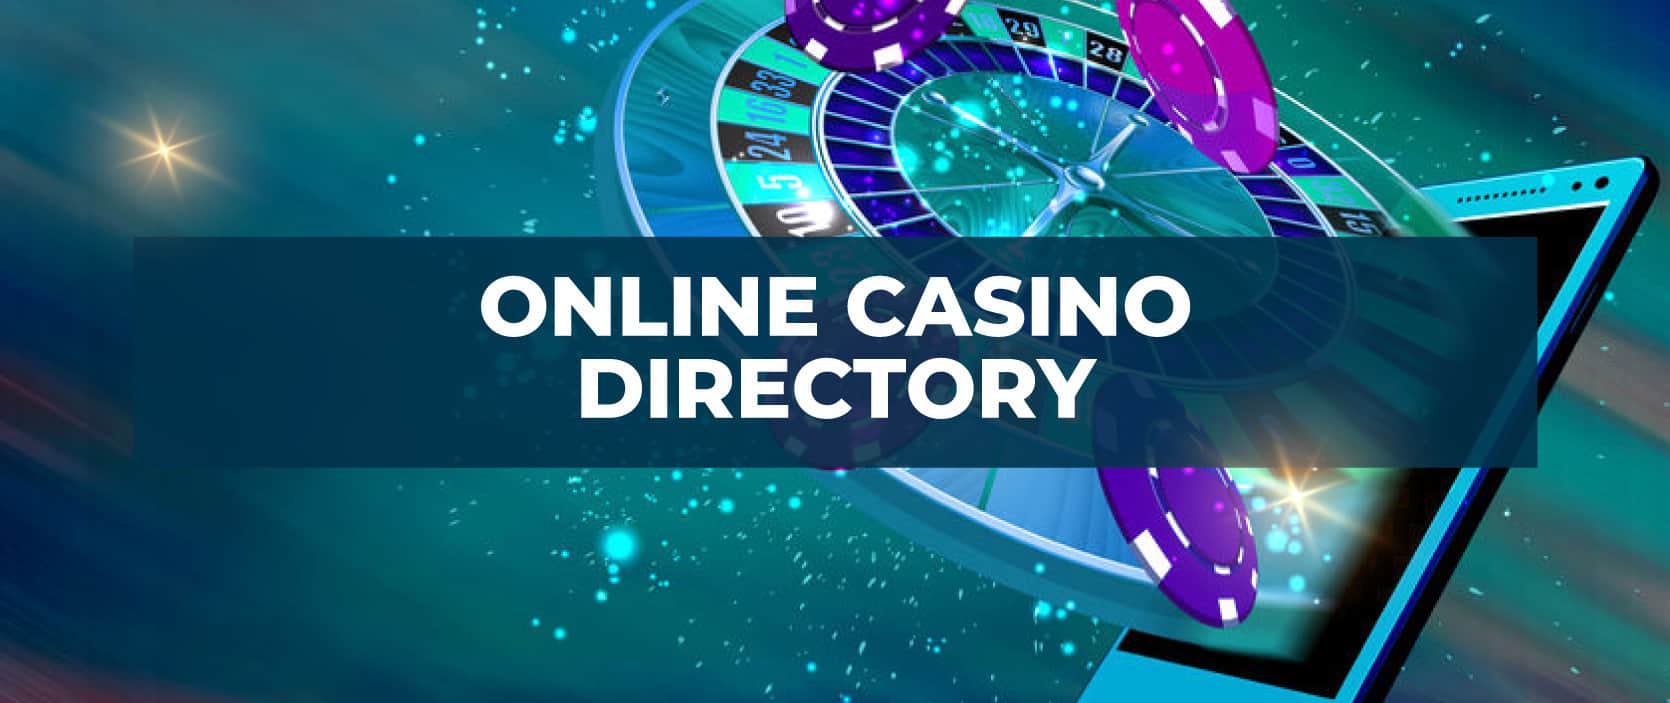 Live casino no deposit bonus